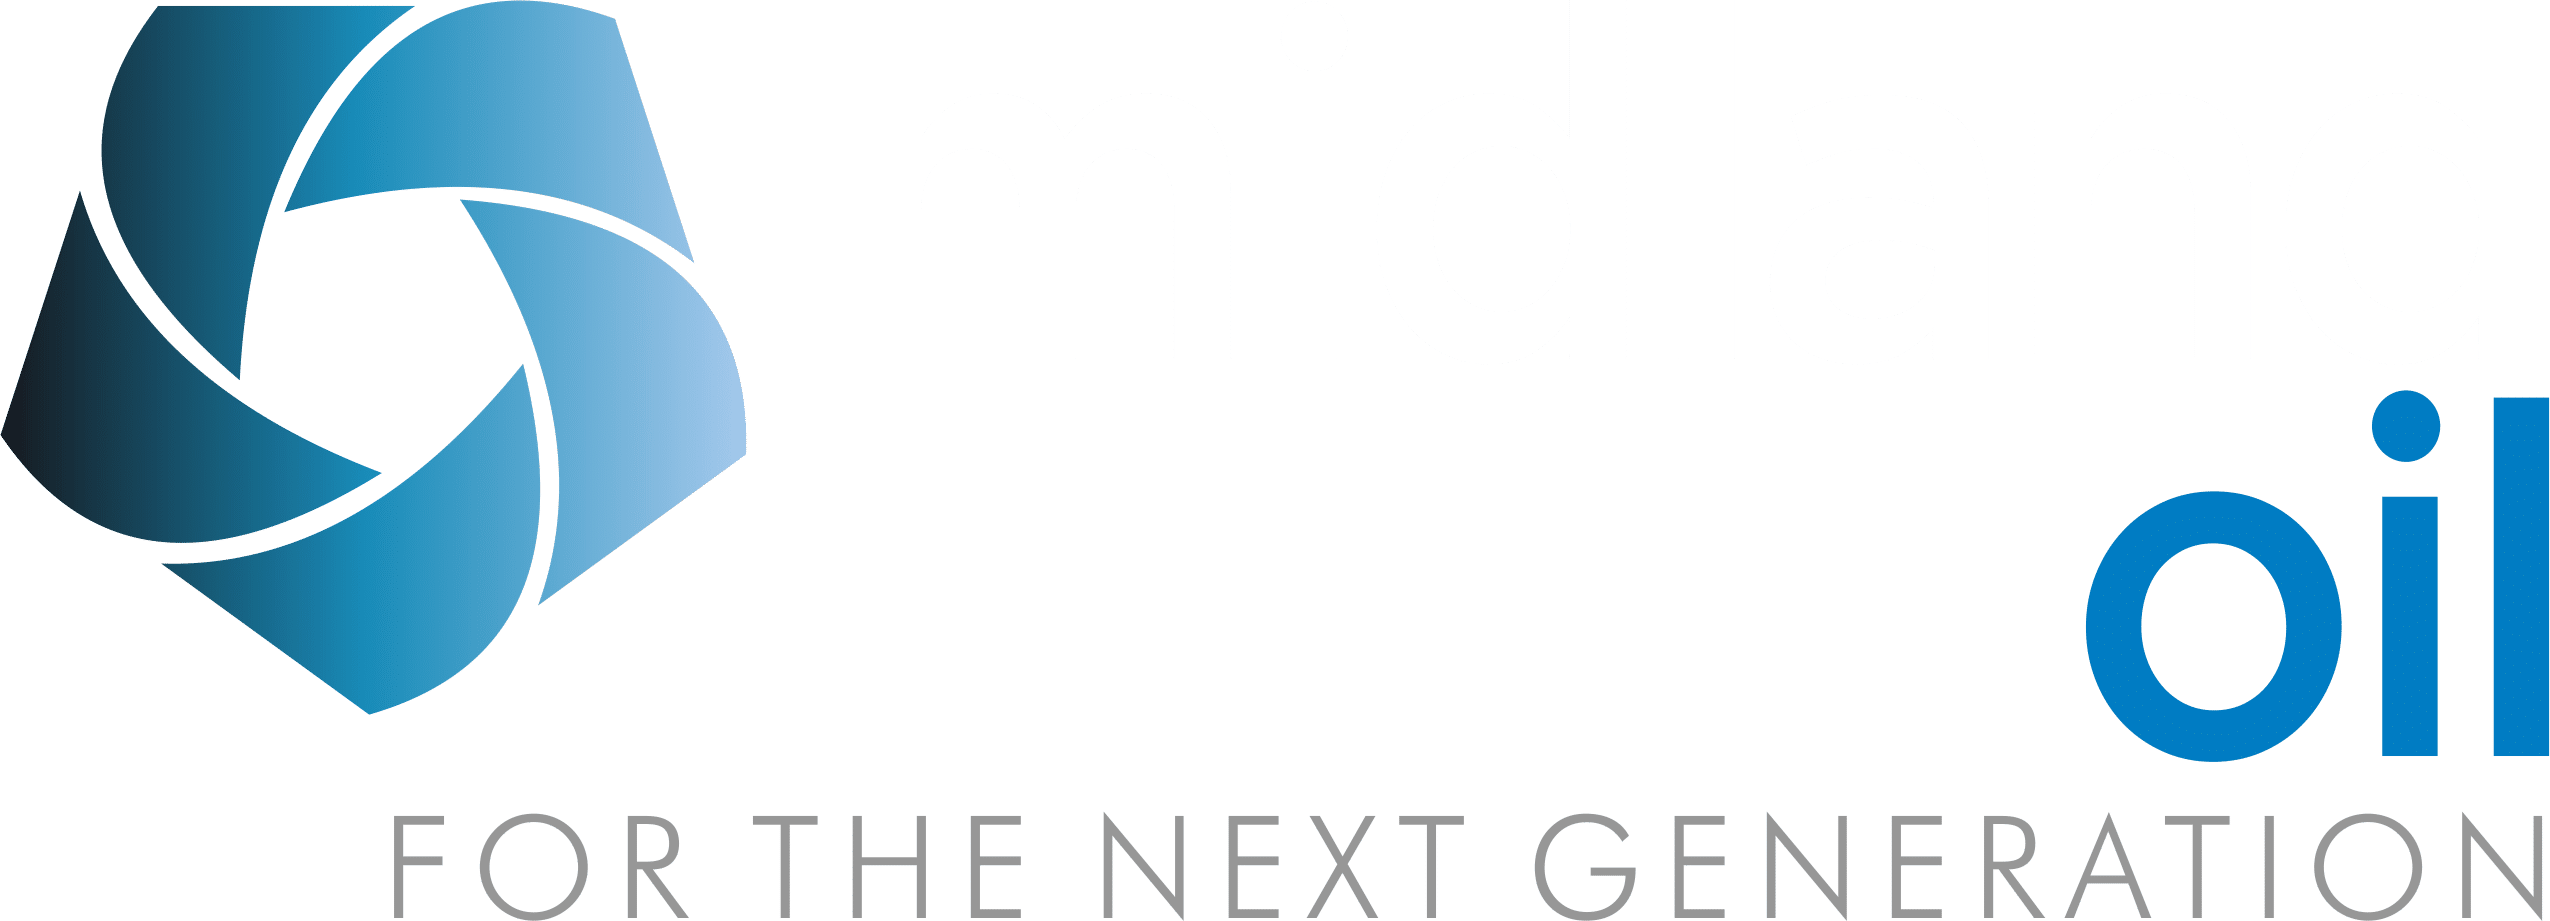 Midland Oil - White text